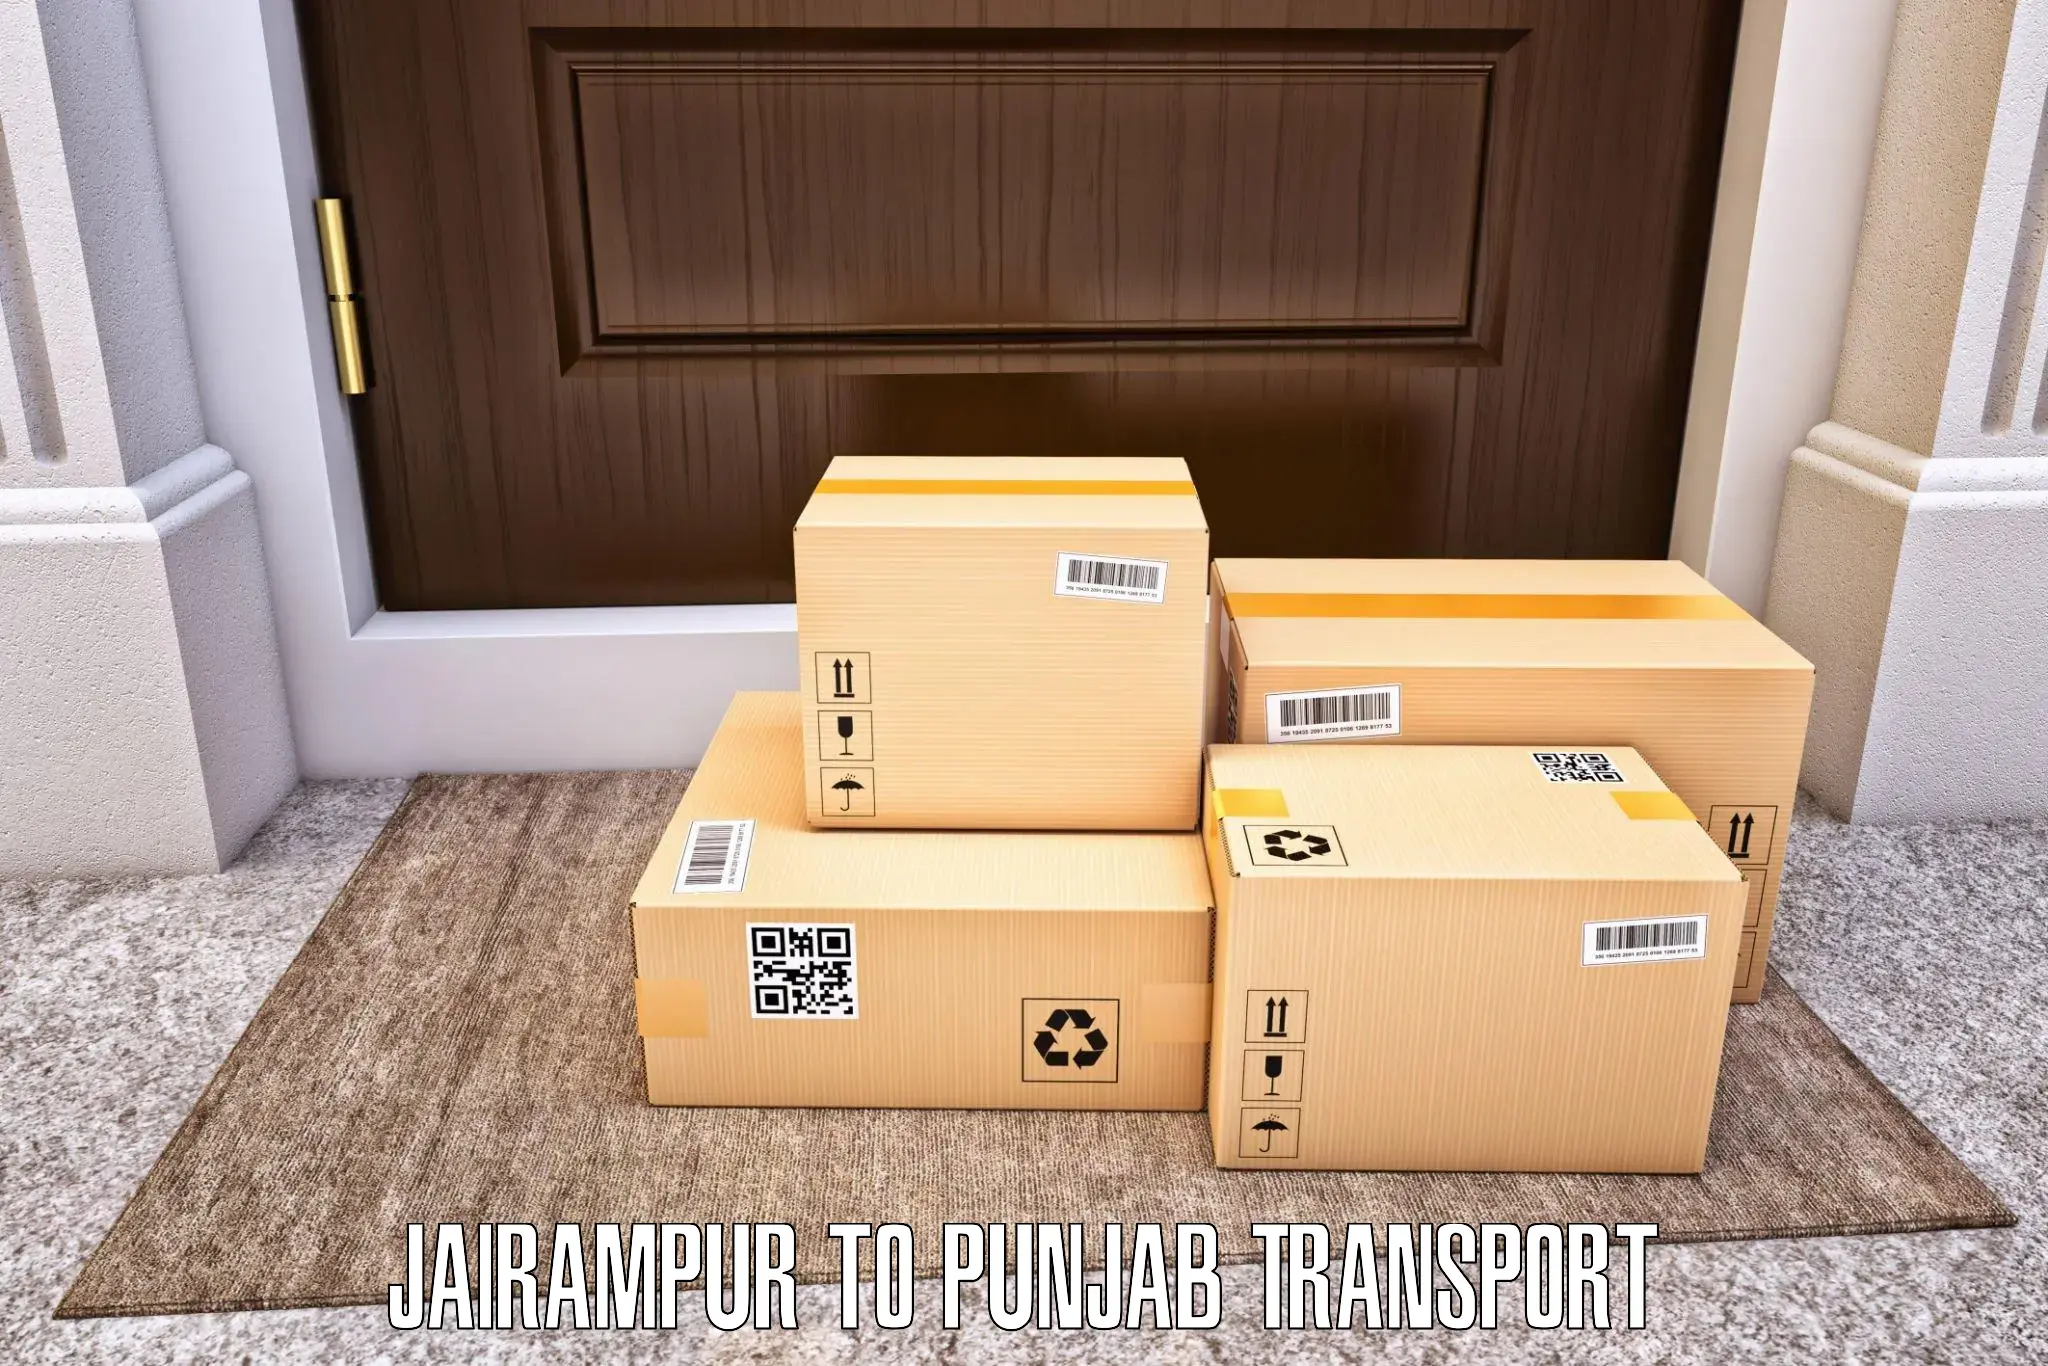 Furniture transport service in Jairampur to Phagwara